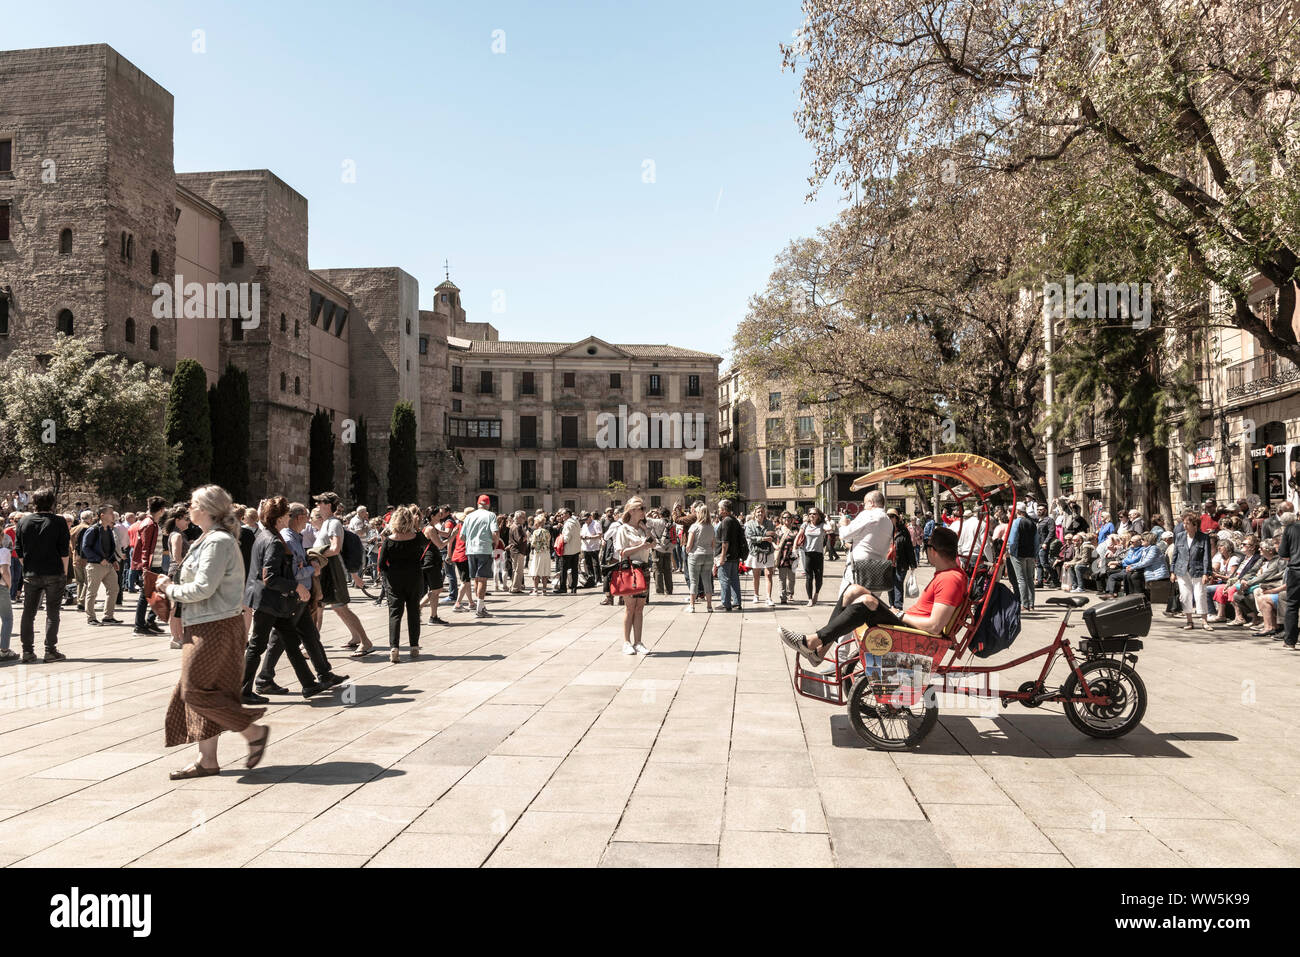 Auténticas imágenes de personas reales en situaciones cotidianas. Divertirse, en vacaciones, andando en bicicleta, compras, paseos y jogging, en Barcelona, España. Foto de stock